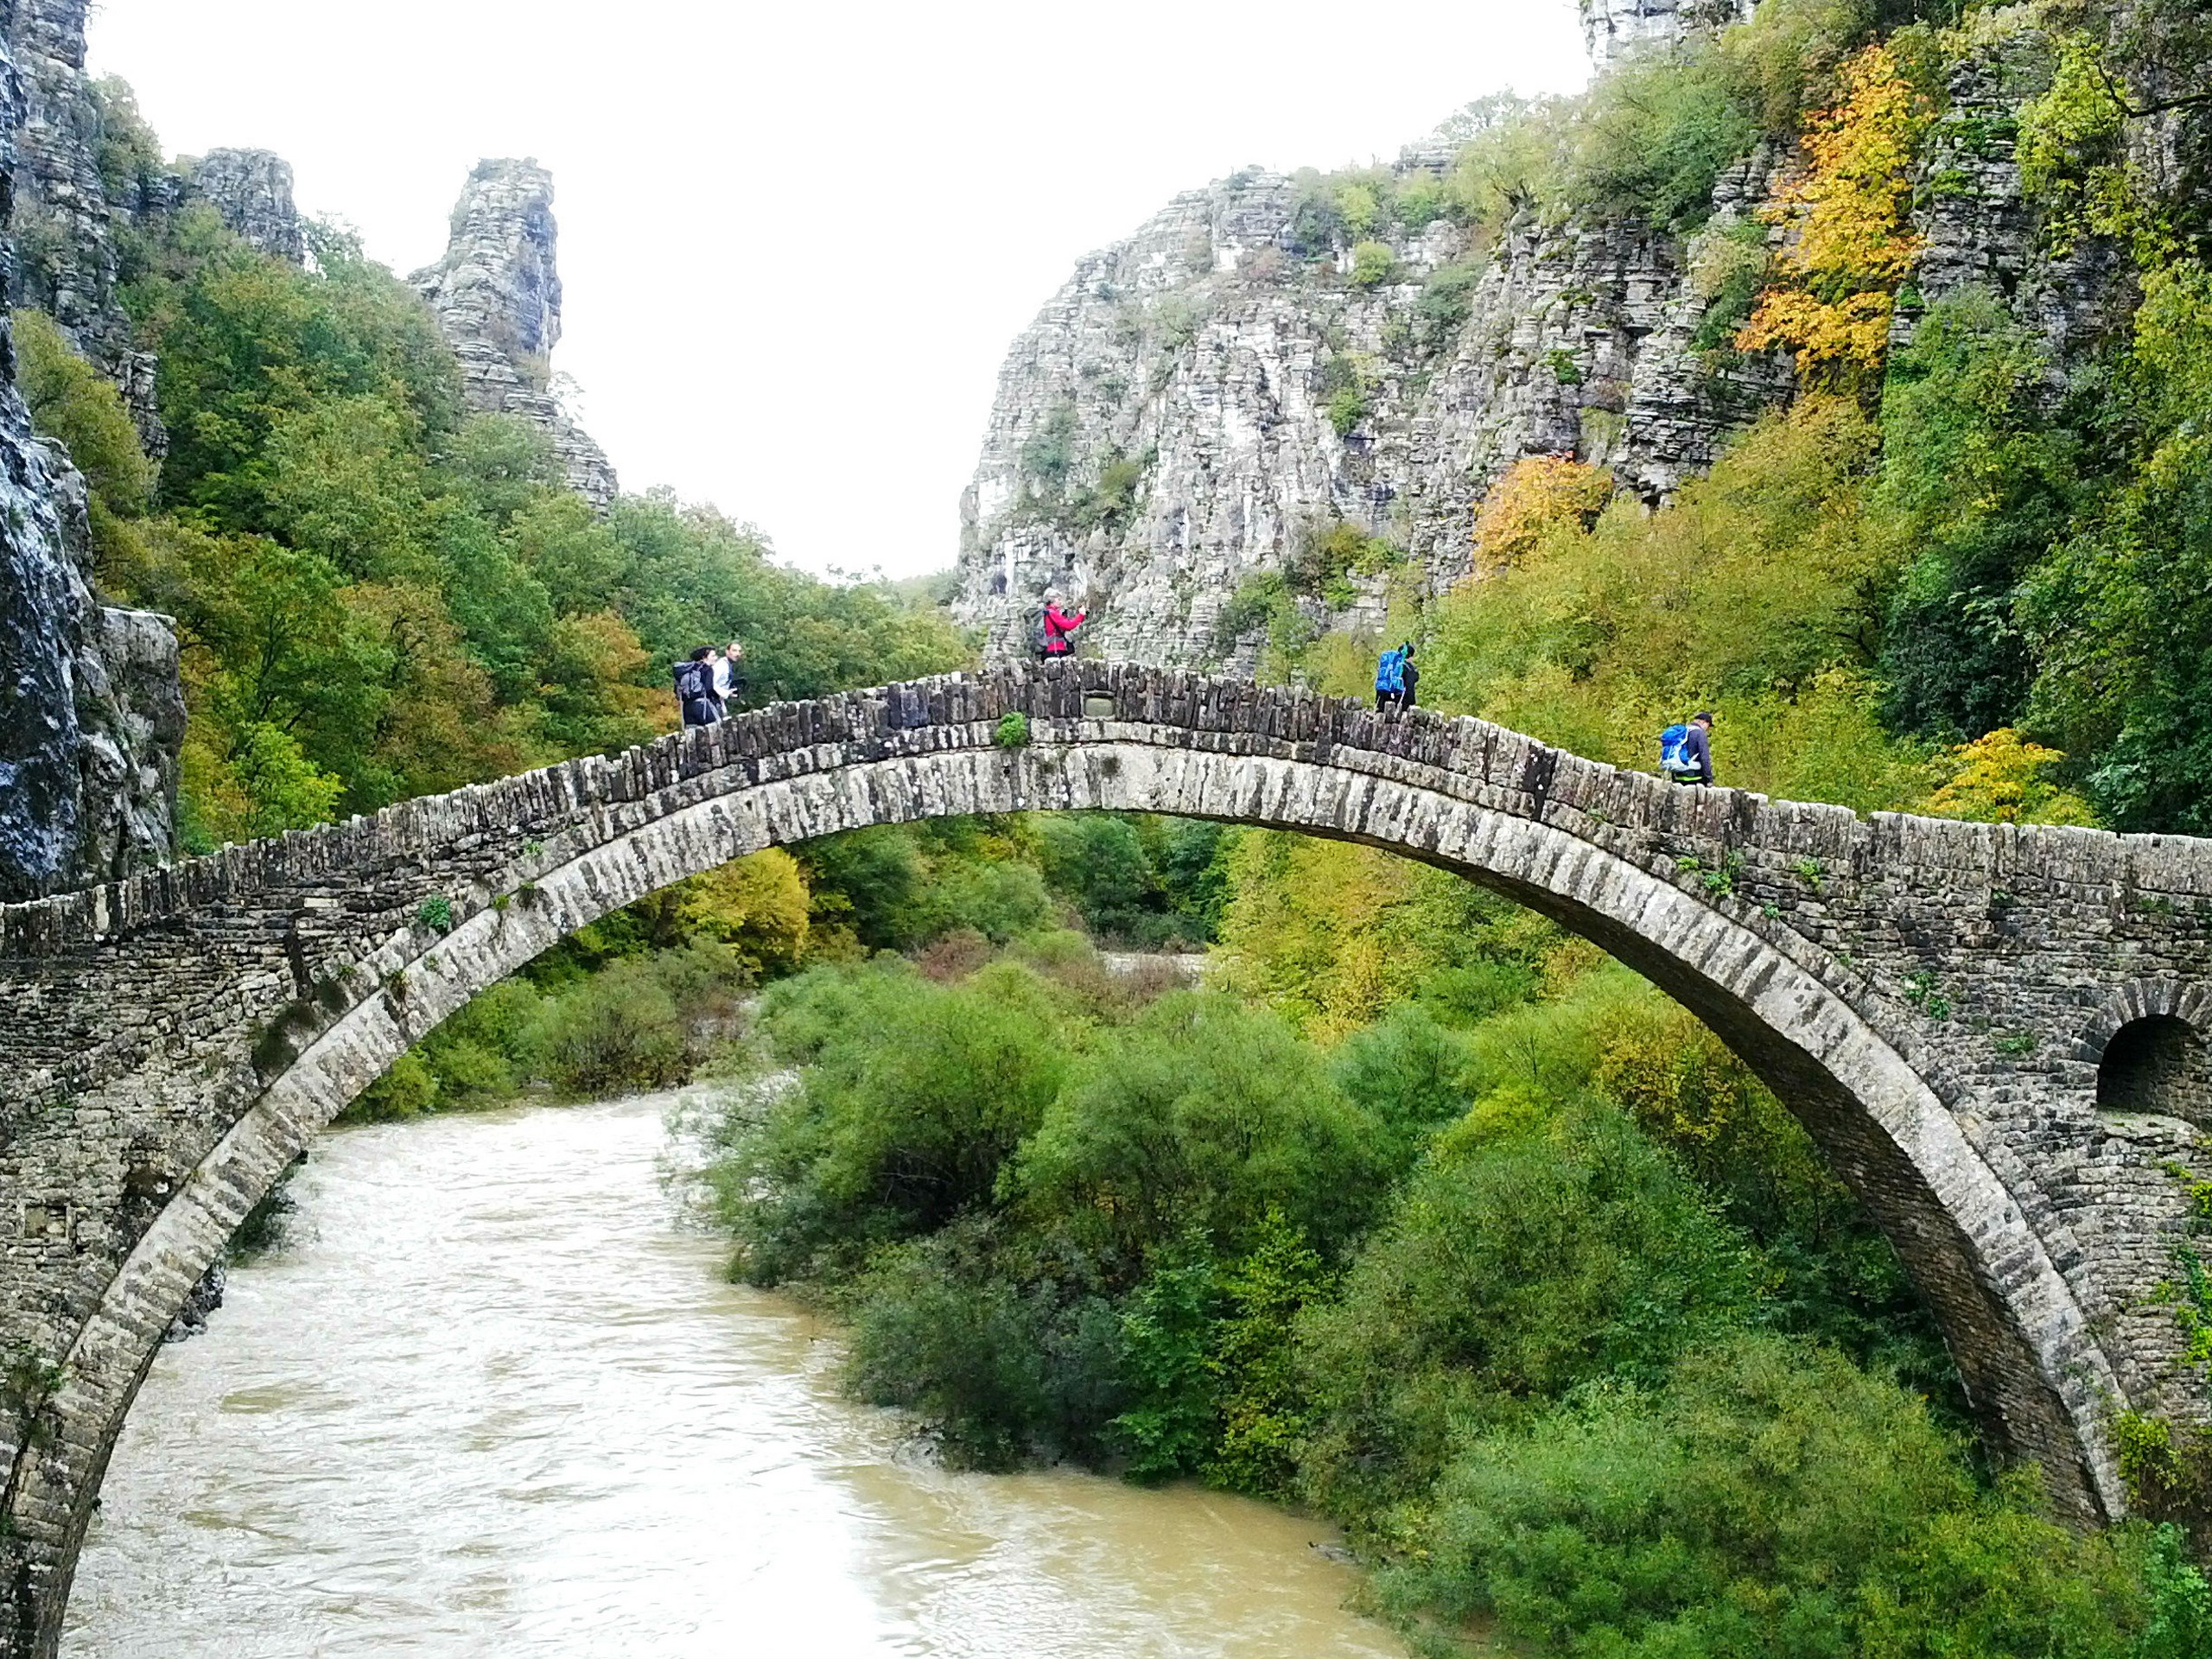 Hikers walking over the bridge in Vikos Gorge region